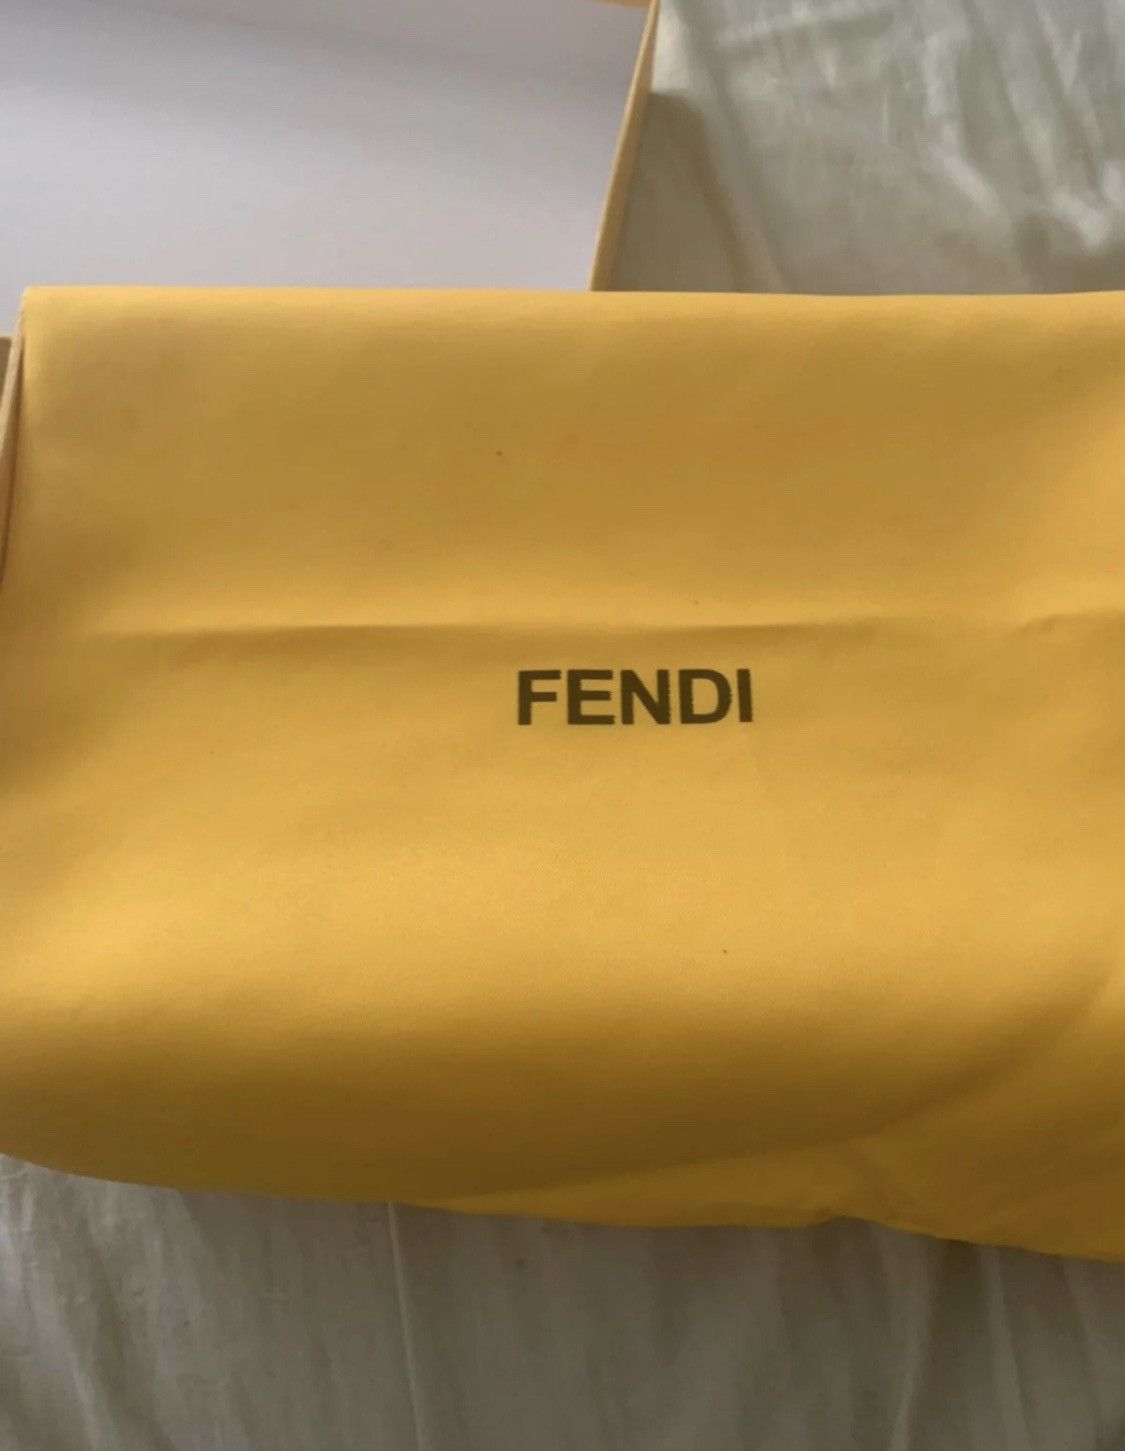 Fendi Fendi Shoes Size US 10 / EU 43 - 8 Preview